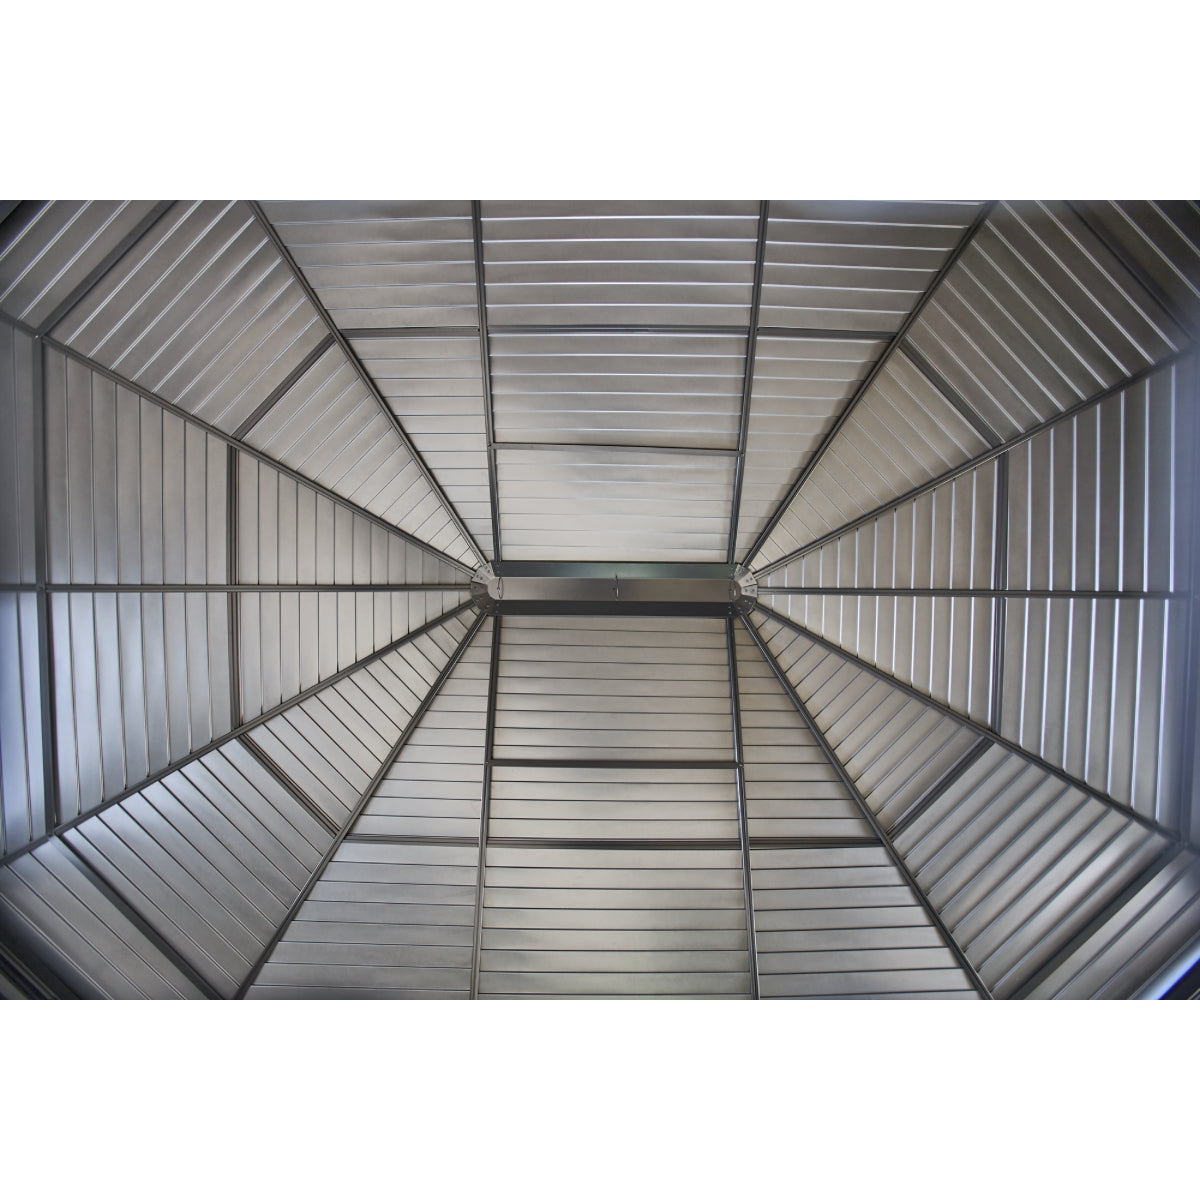 Korado Aluminum Octagonal Solarium 12 x 12 ft. | Sojag-Delightful Yard